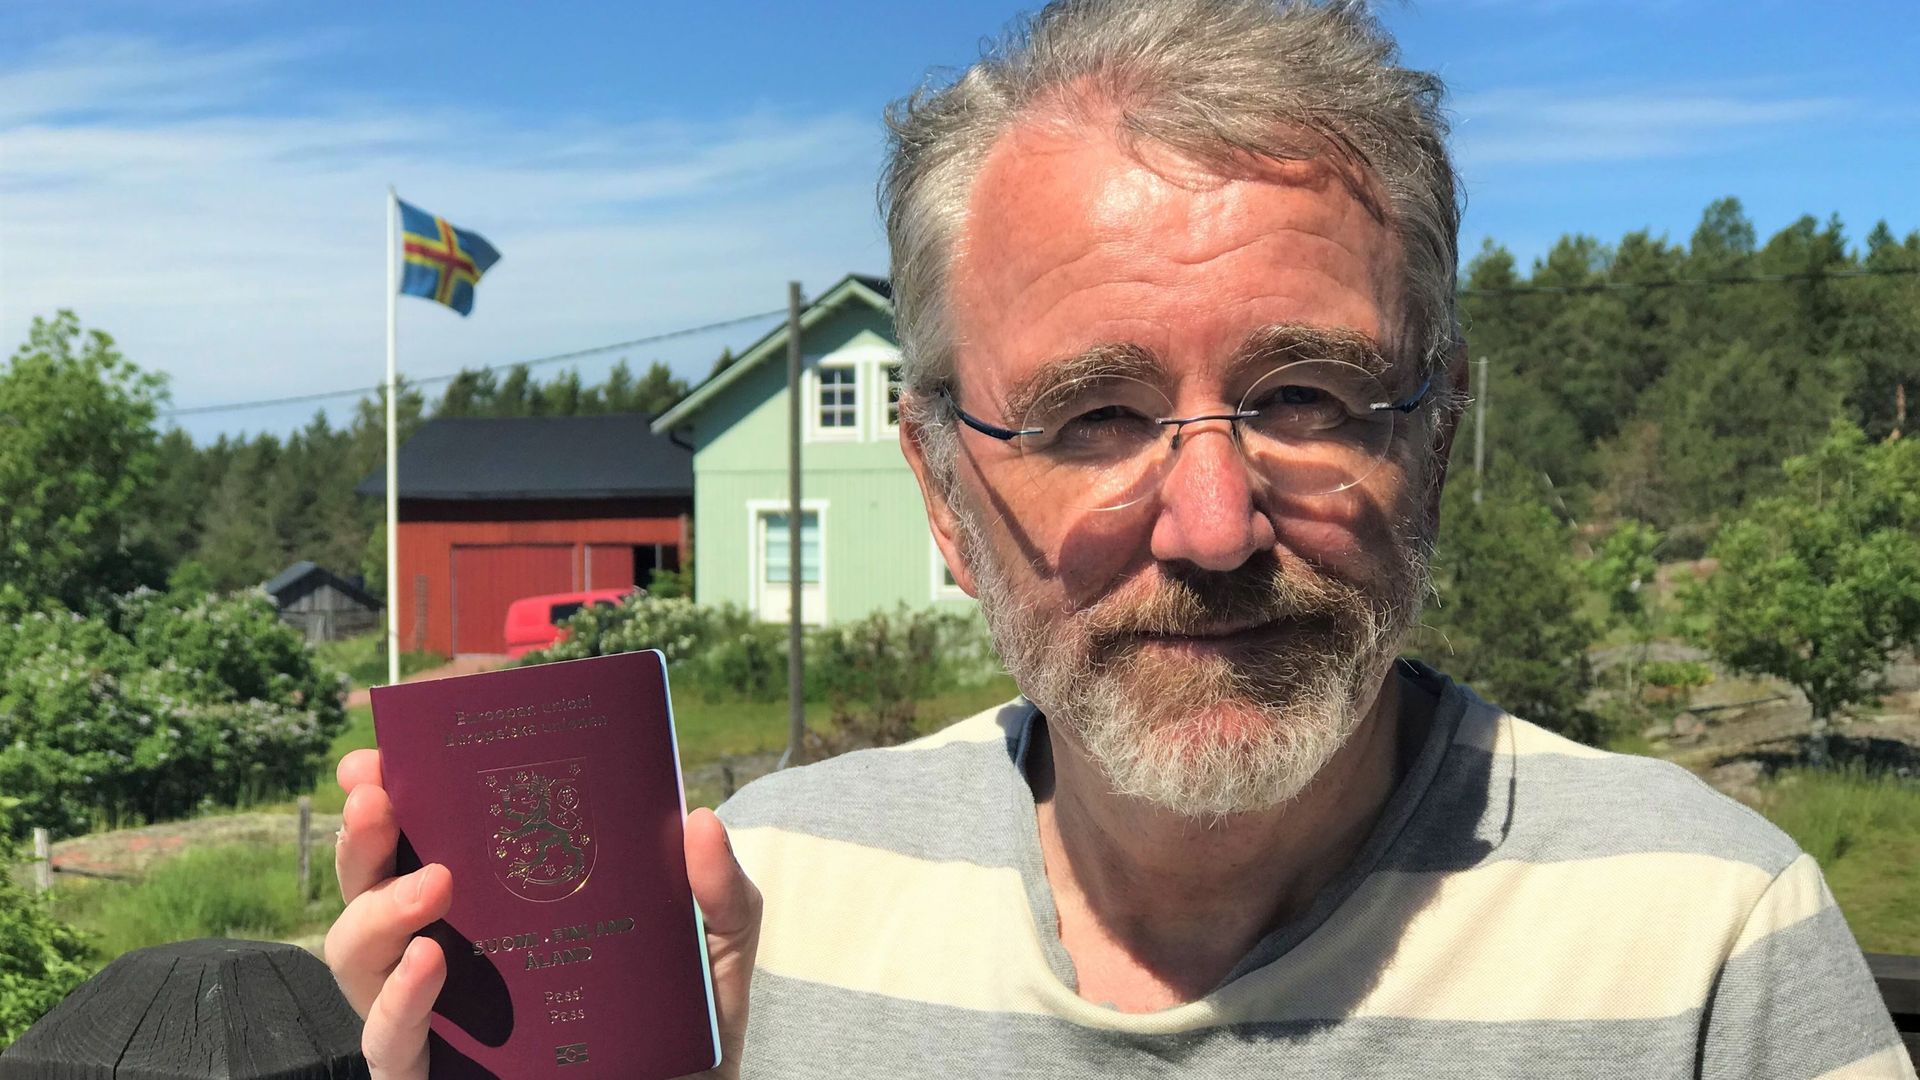 Bengt Michelsson est citoyen alandais car il est de nationalité finlandaise, il vit dans l'archipel depuis plus de 5 ans et il parle le suédois. 